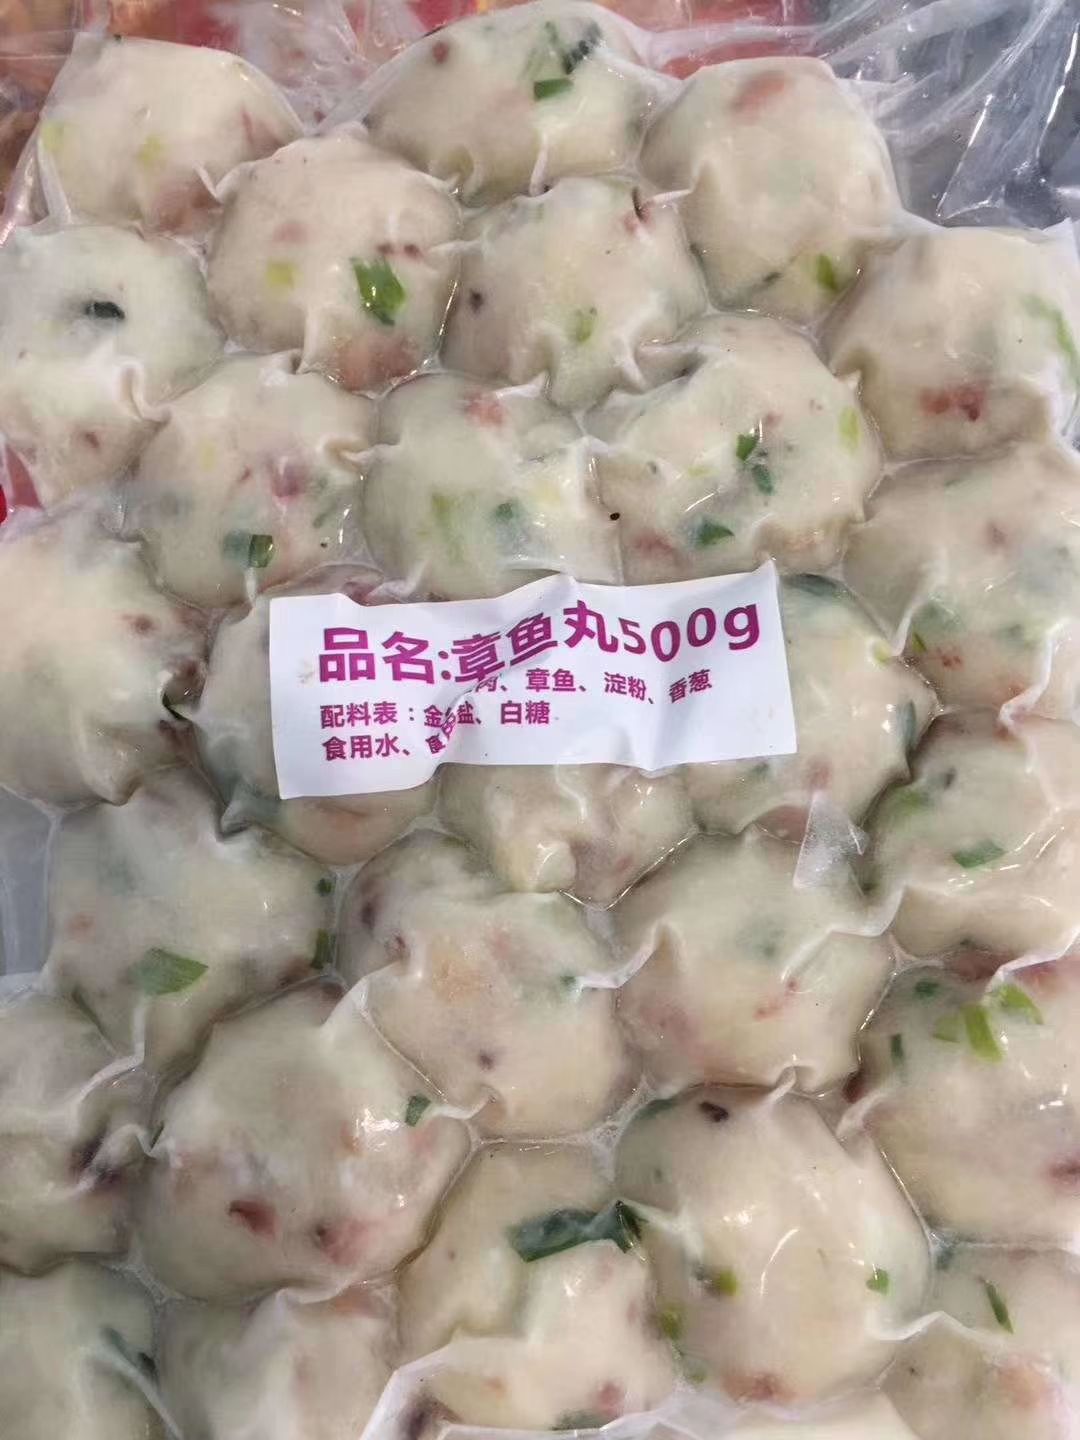 章鱼丸烧烤火锅店丸子食材食品厂直销